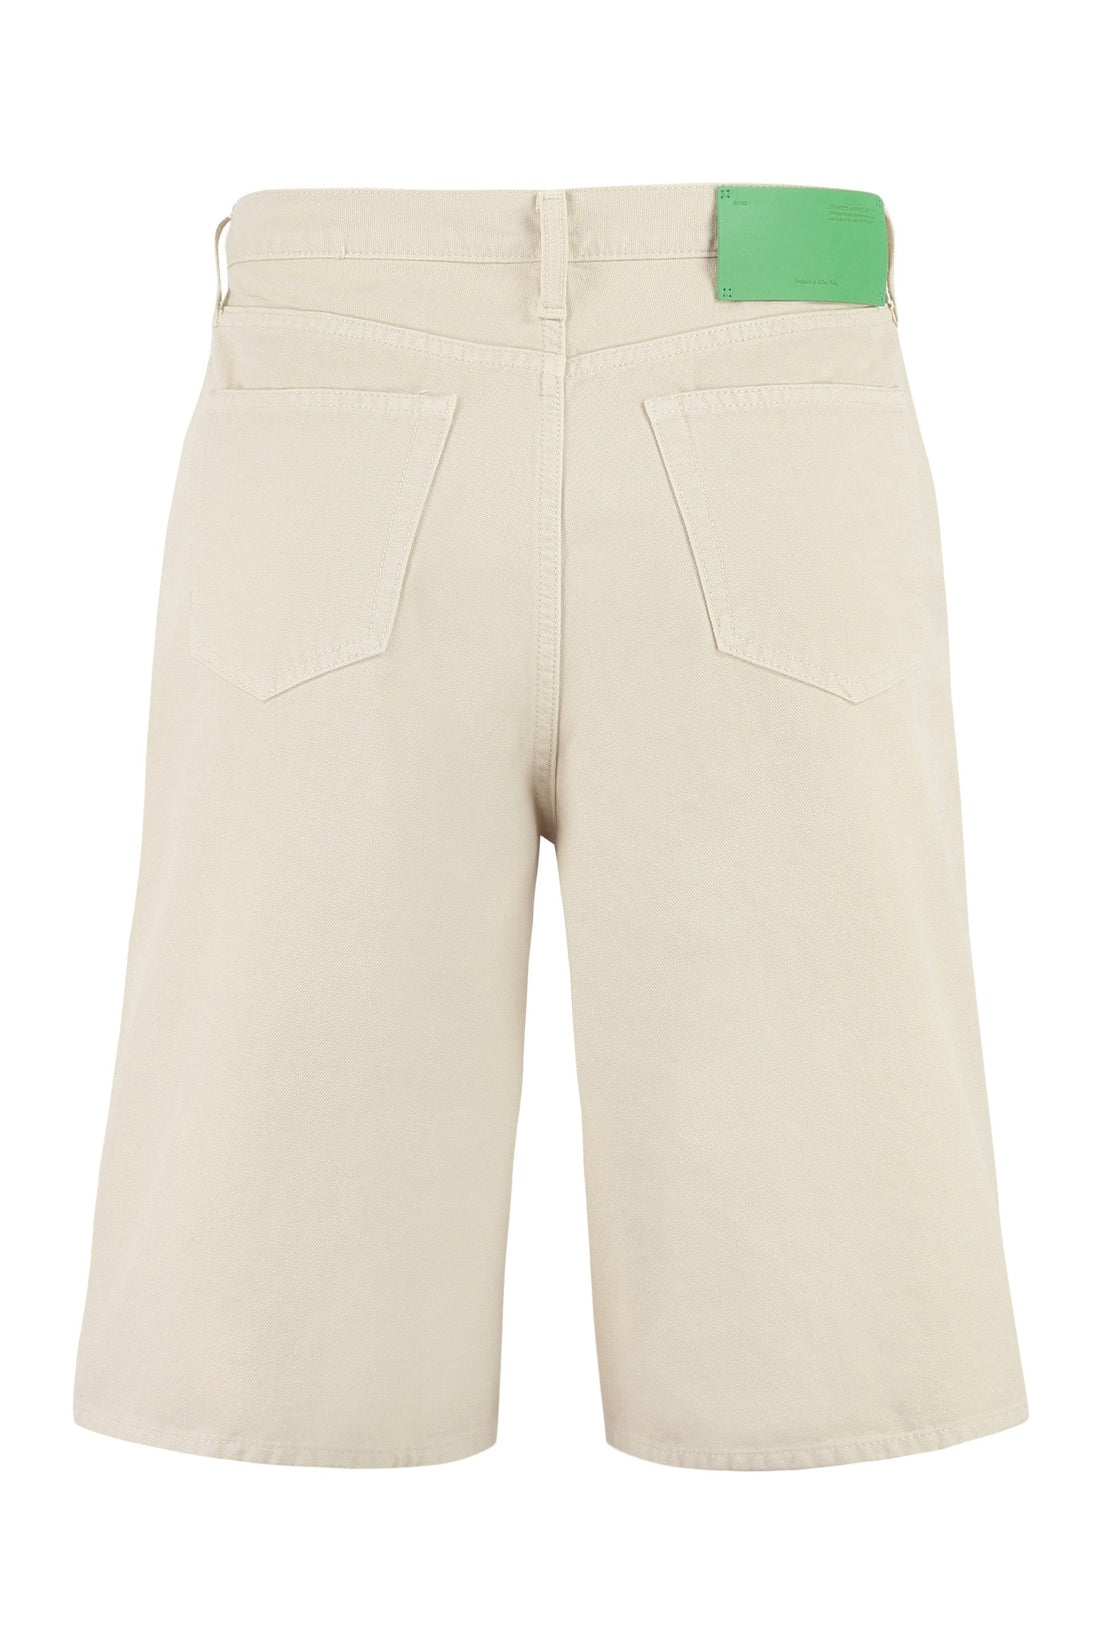 Off-White-OUTLET-SALE-Cotton bermuda shorts-ARCHIVIST